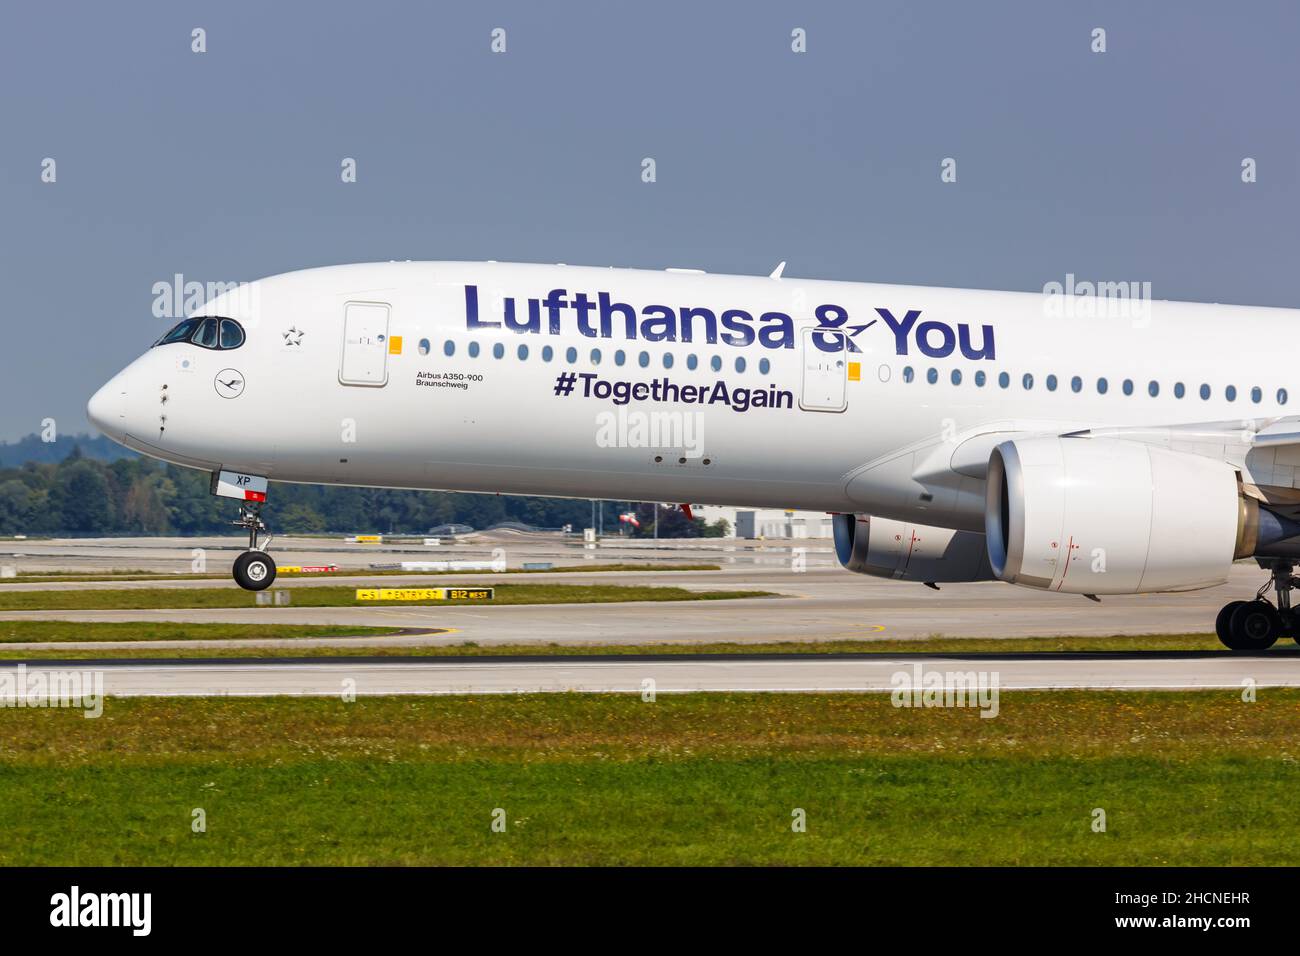 München, 9. September 2021: Lufthansa Airbus A350-900 am Flughafen München (MUC) in Deutschland. Stockfoto